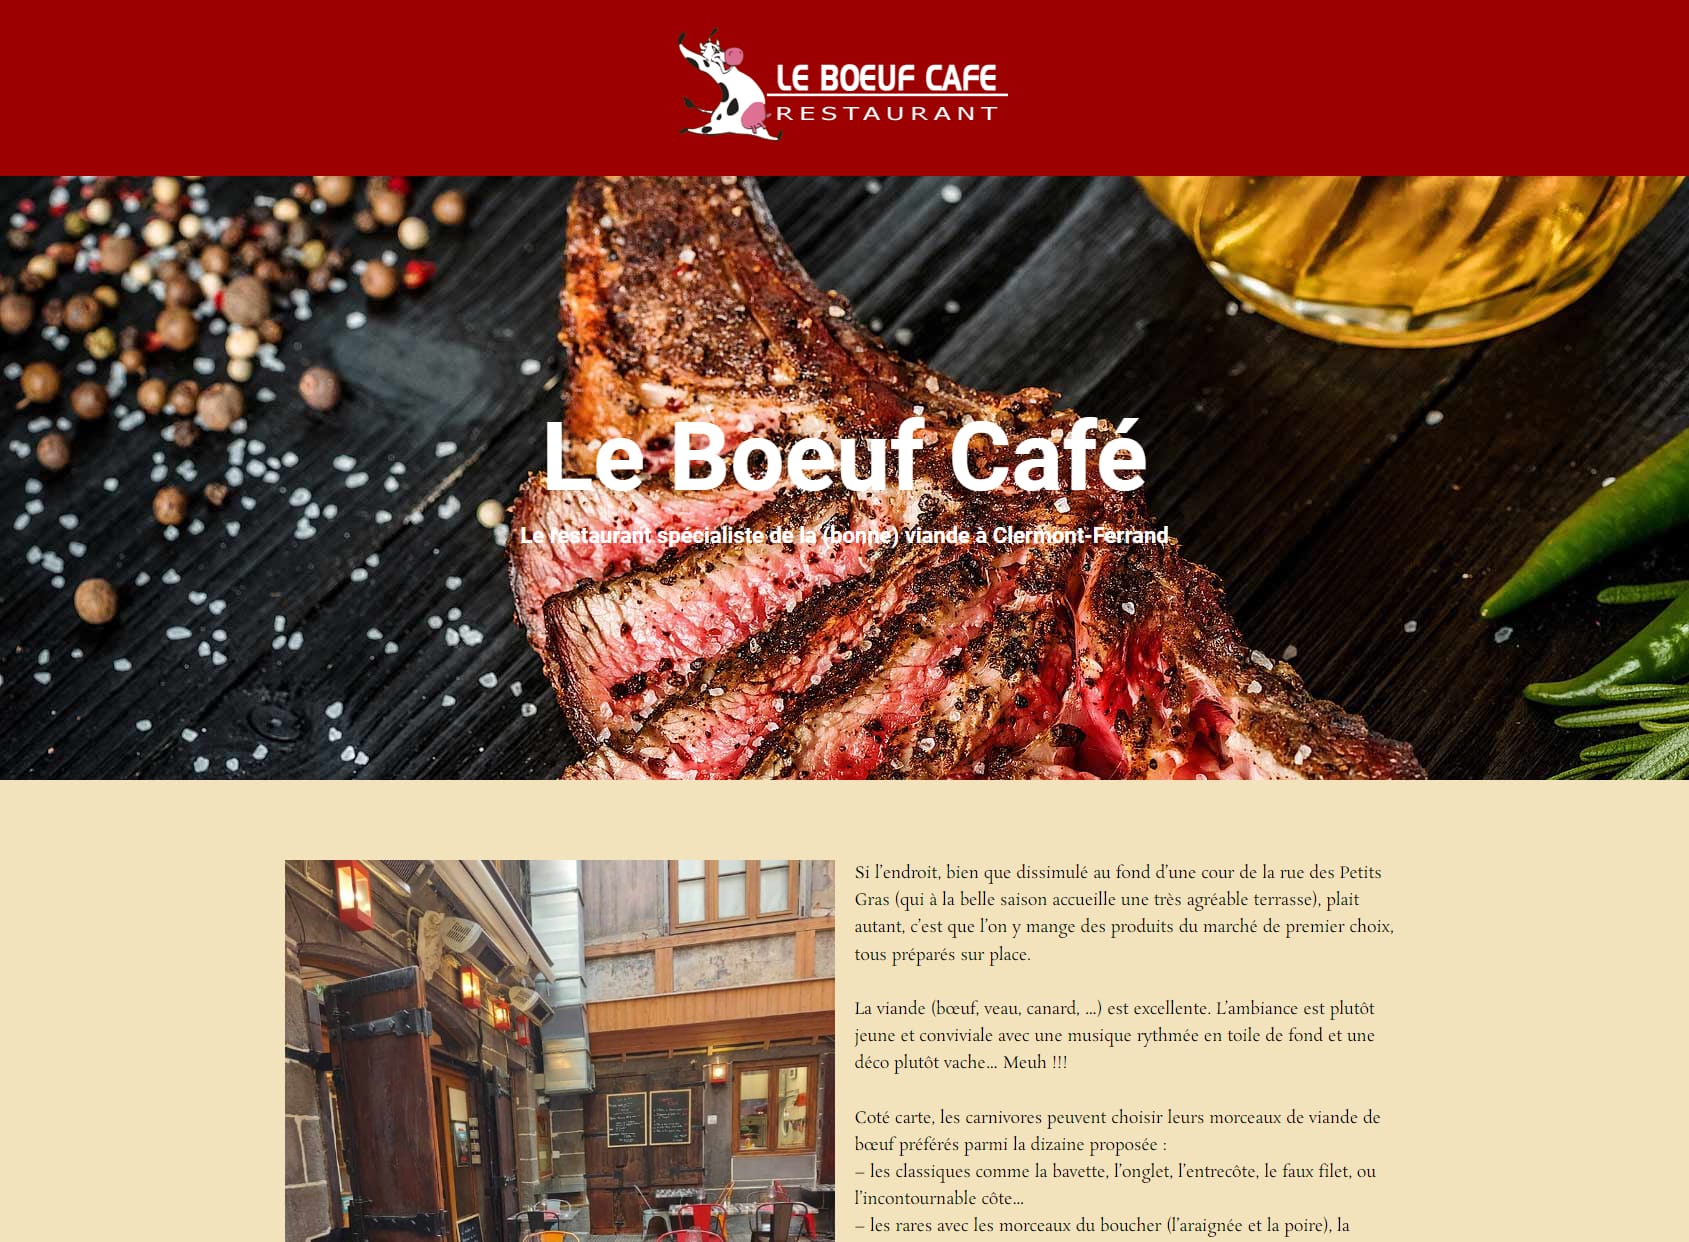 Le Boeuf Café